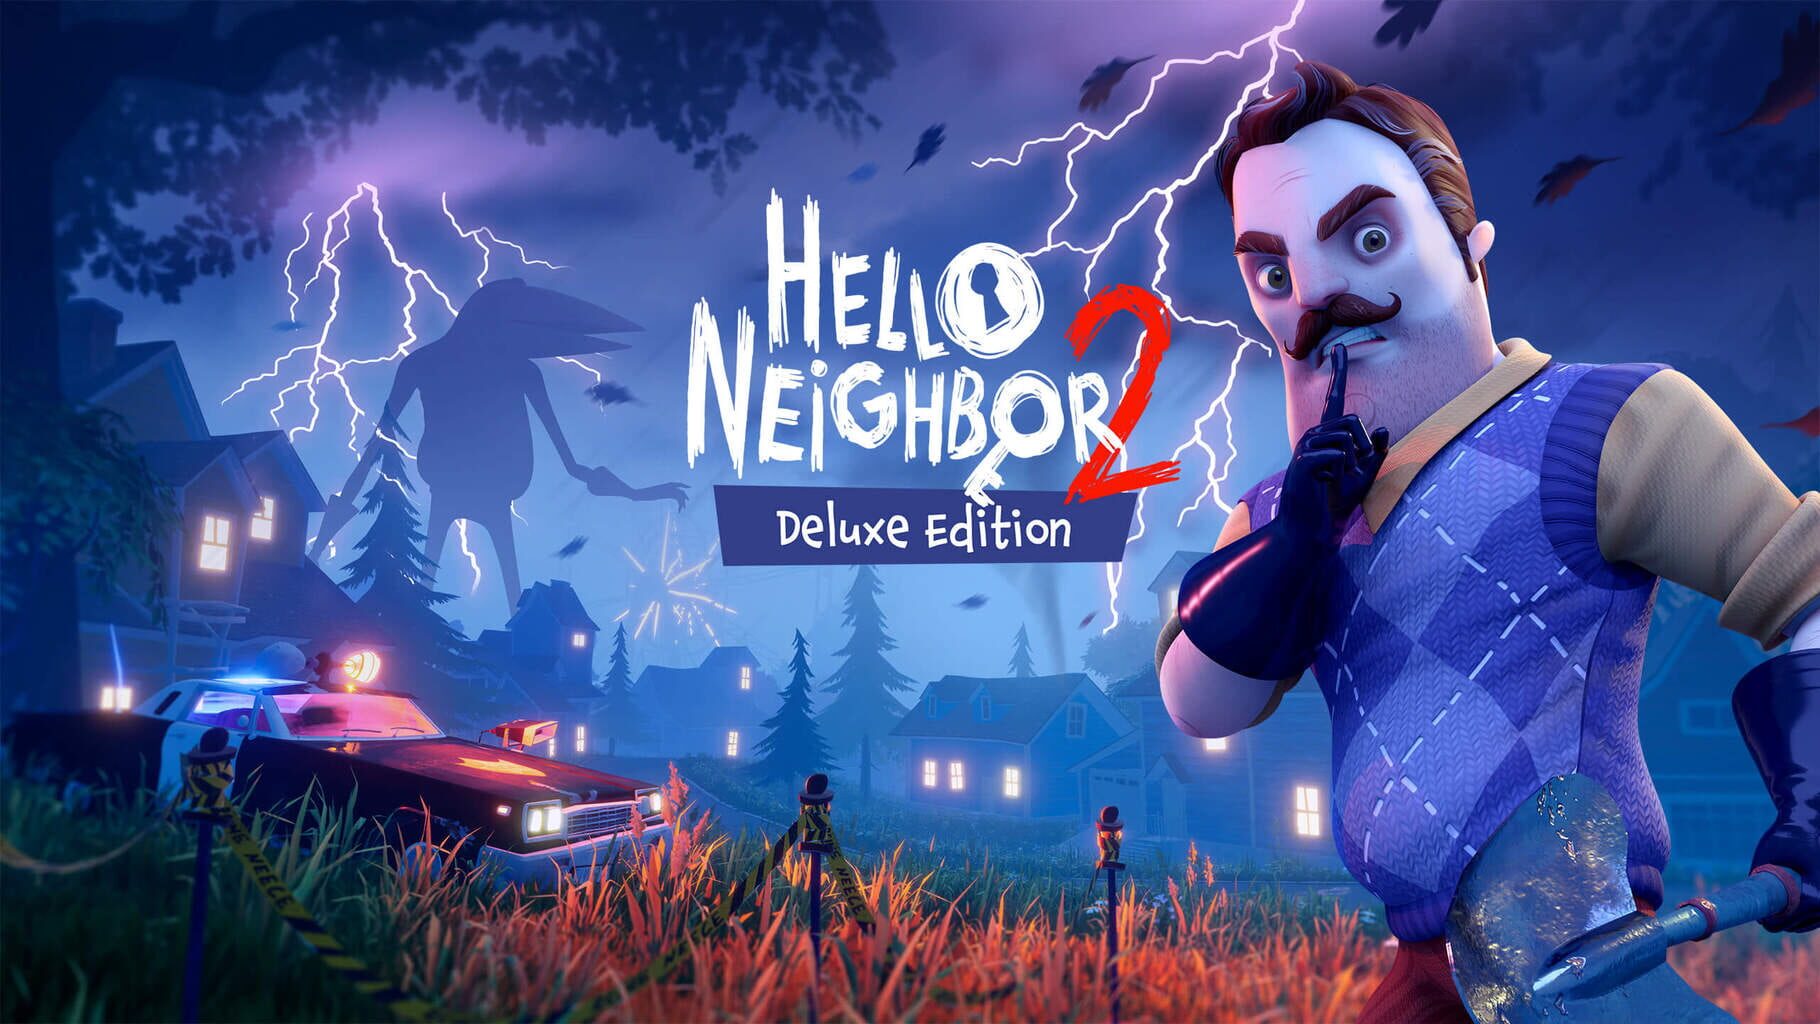 Arte - Hello Neighbor 2: Deluxe Edition